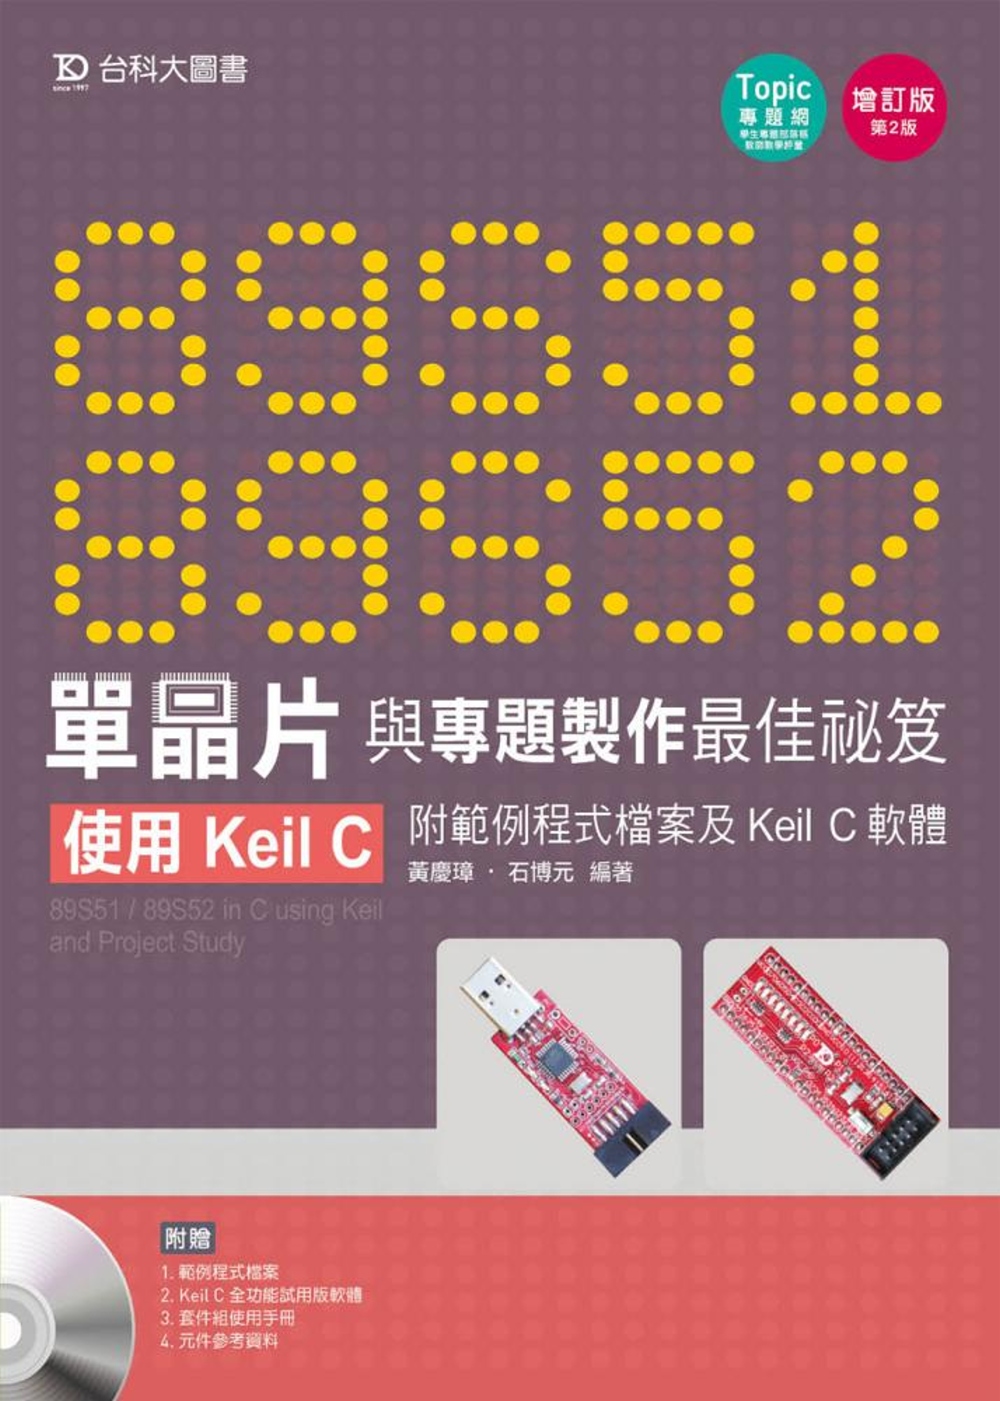 89S51/52 單晶片與專題製作最佳祕笈 - 使用Keil...